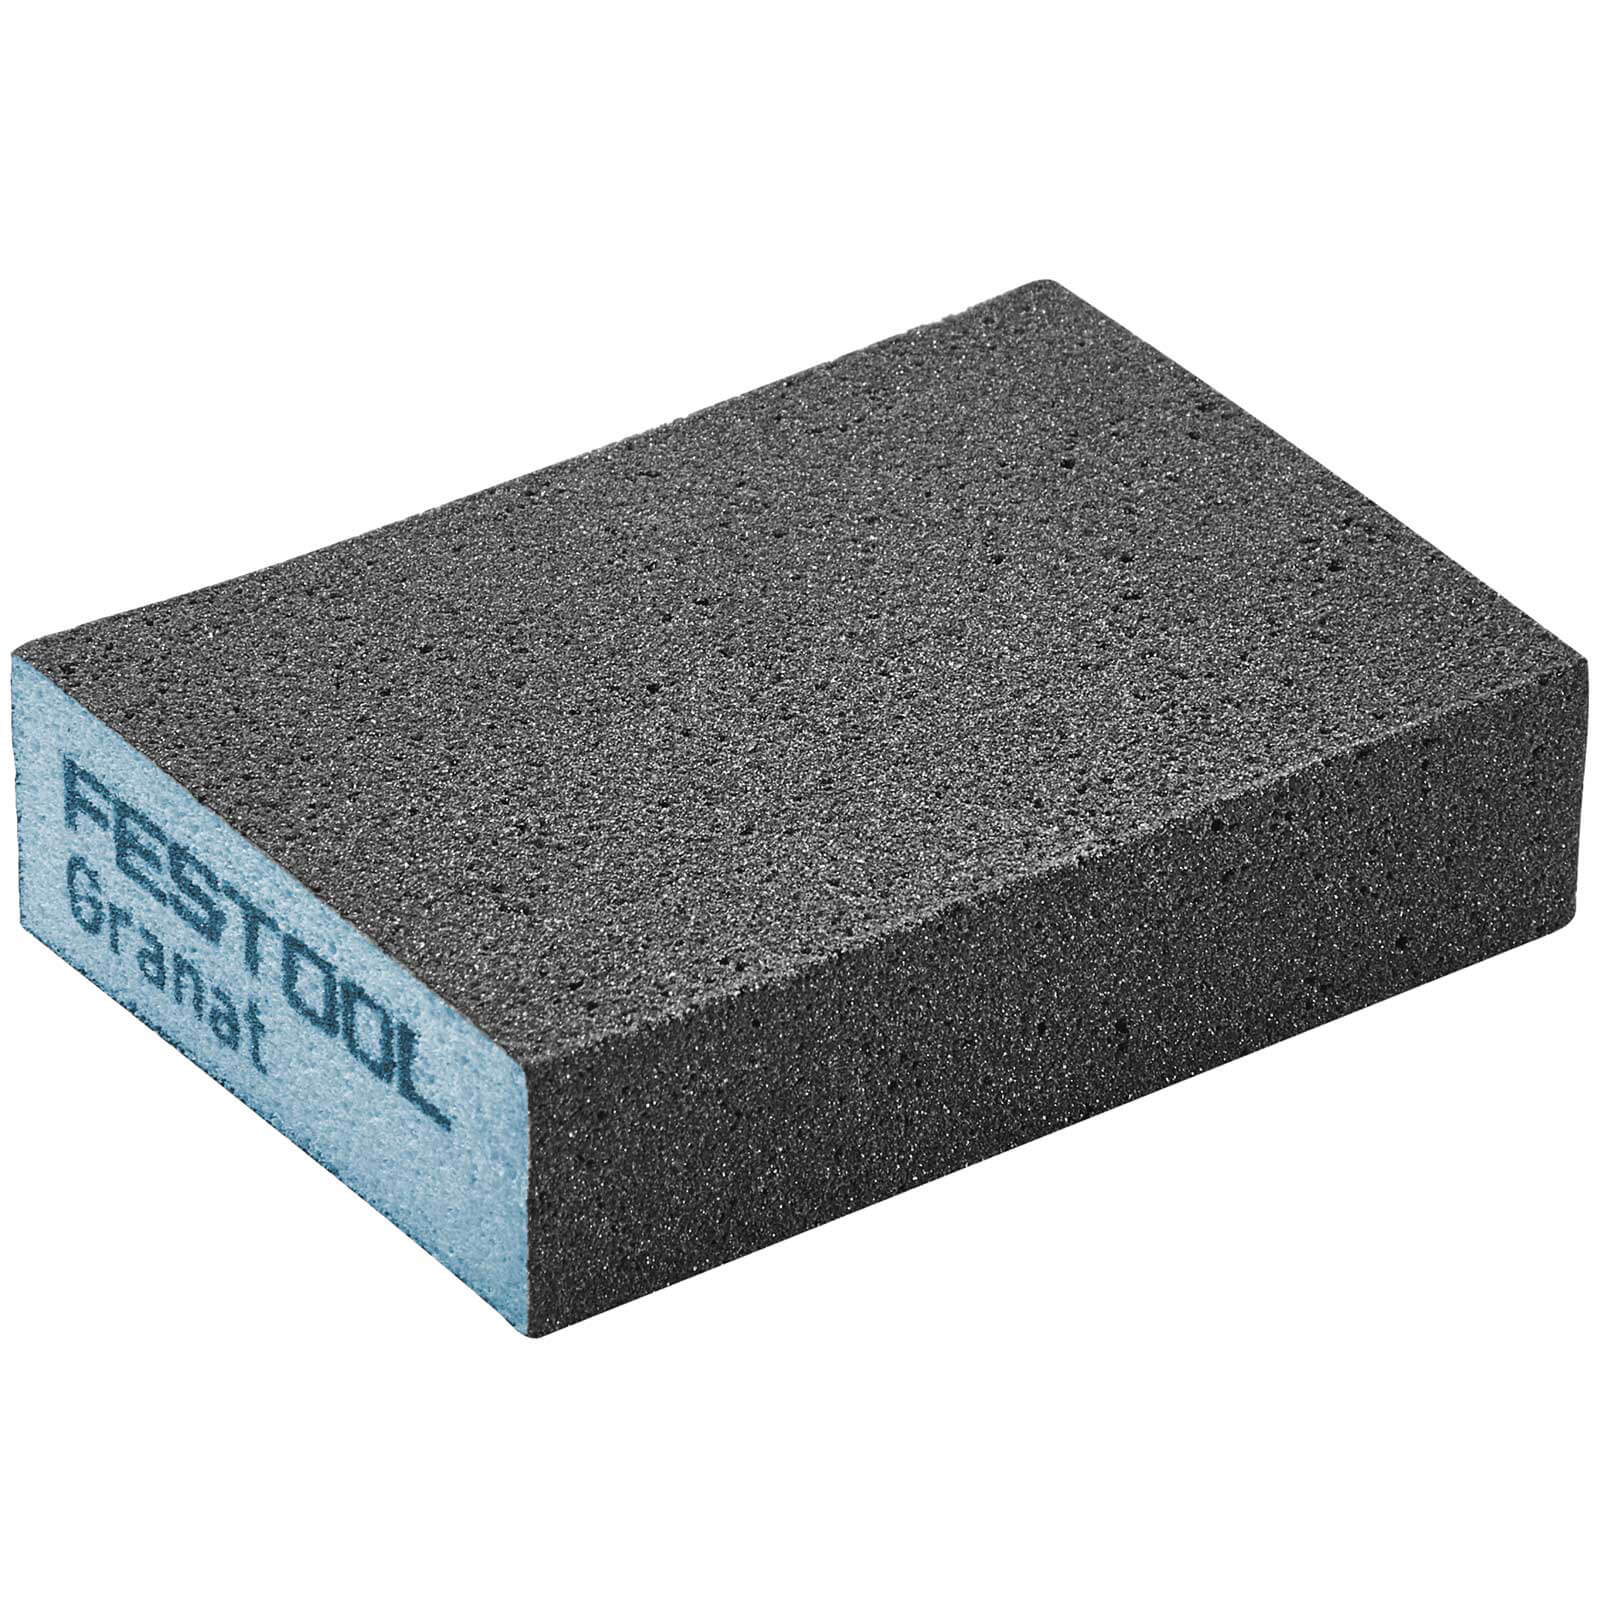 Photo of Festool Abrasive Hand Sanding Sponge Block 36g Pack Of 6